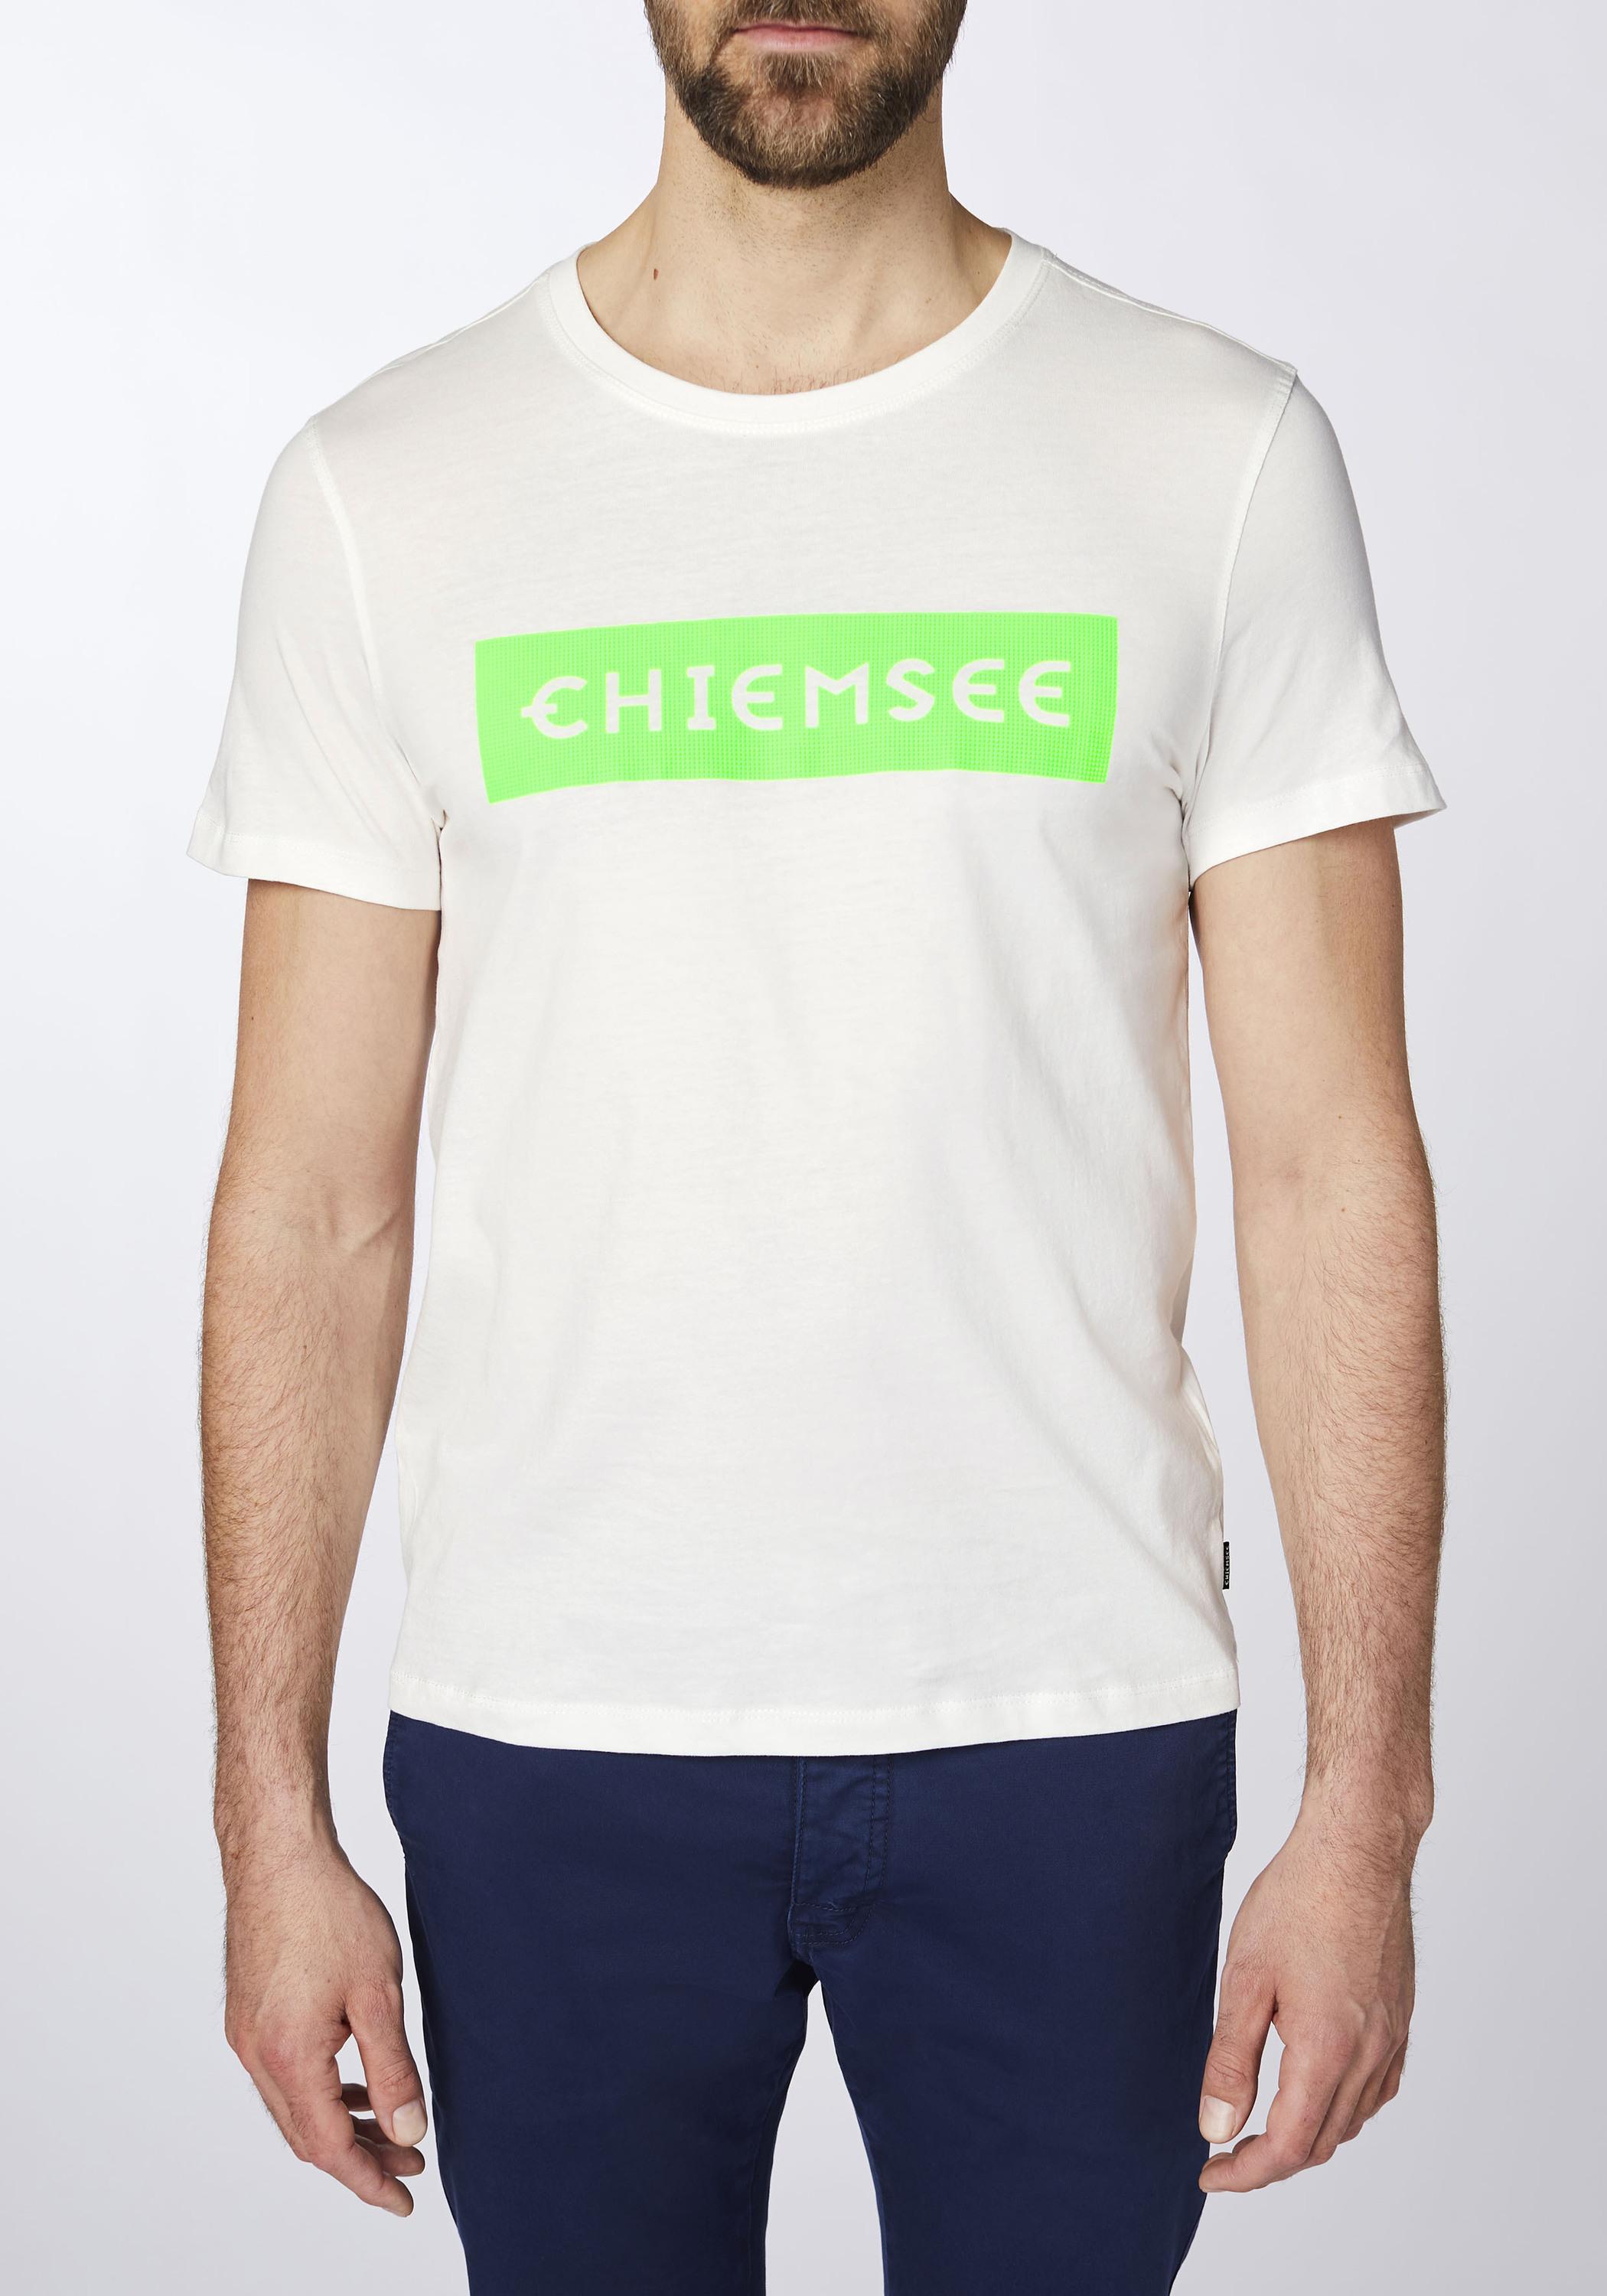 Chiemsee T-Shirt T-Shirt Herren kaufen im Dif von Grn Wht/Md Shop Online SportScheck